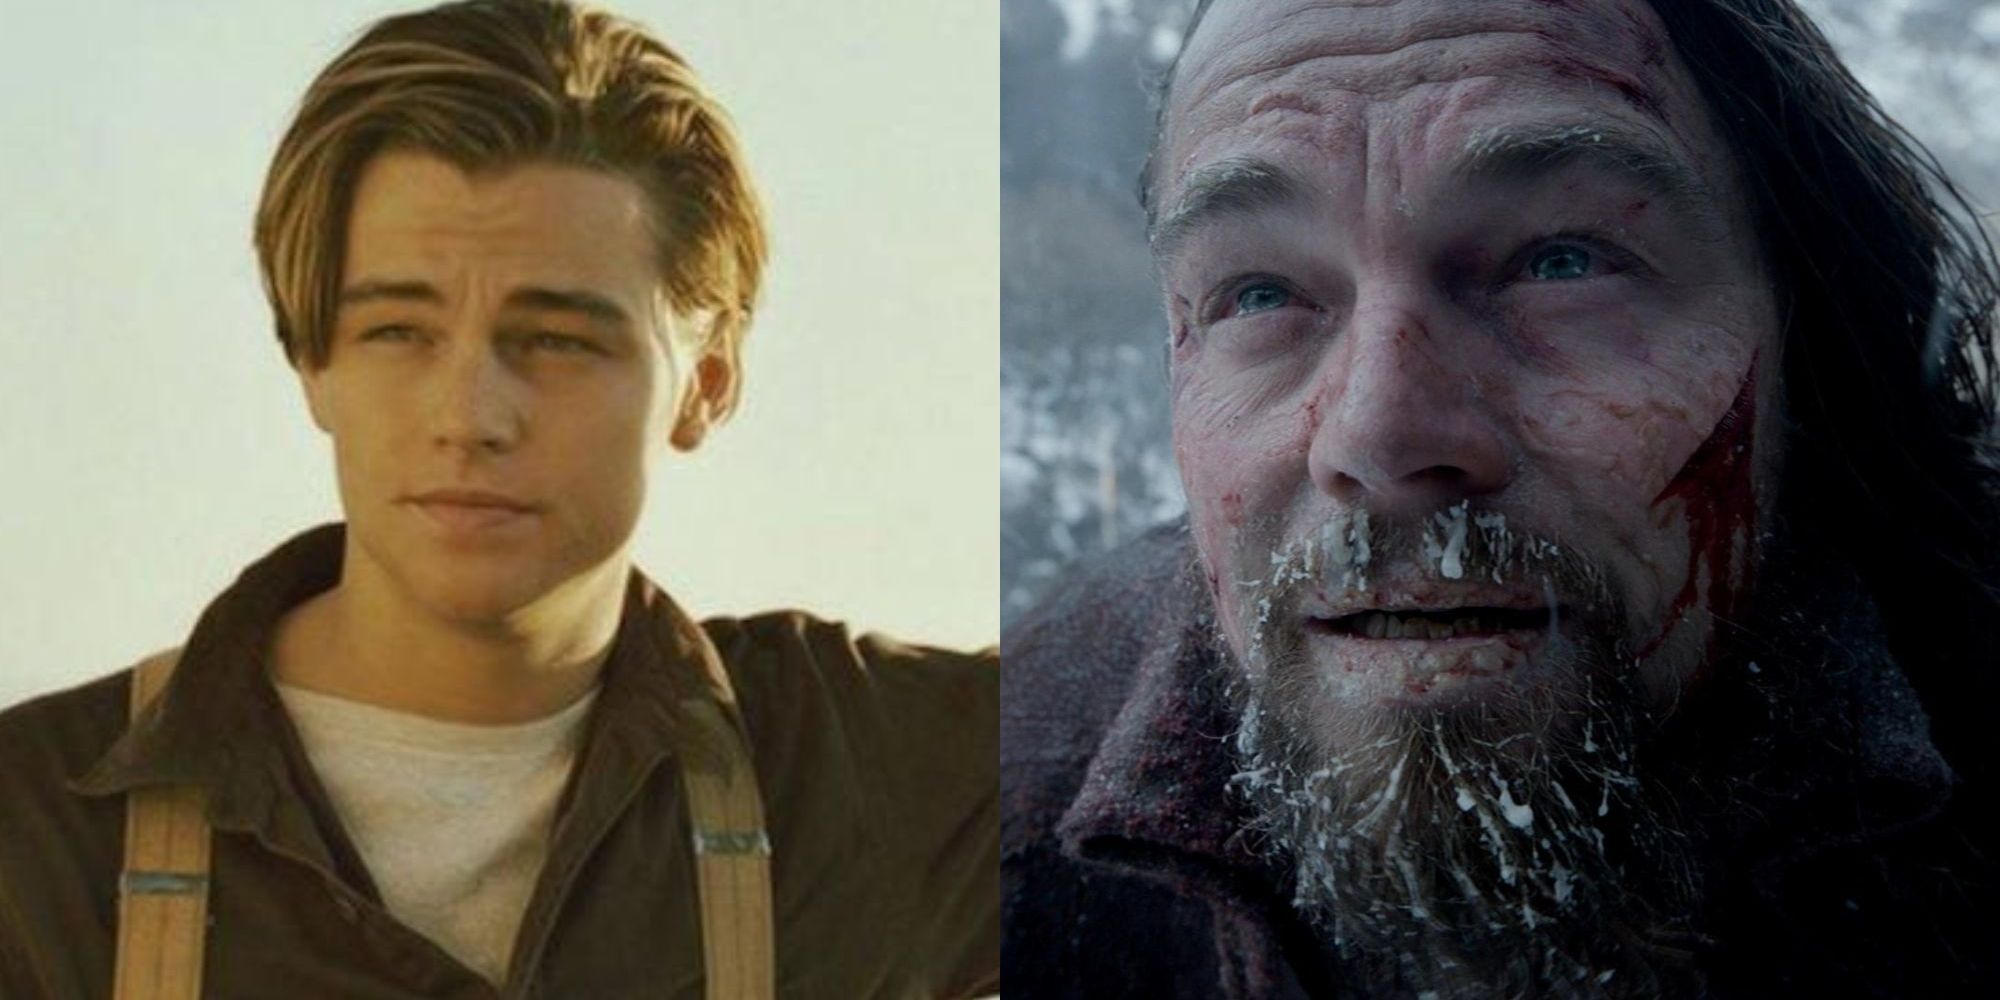 Leonardo DiCaprio - Titanic & The Revenant